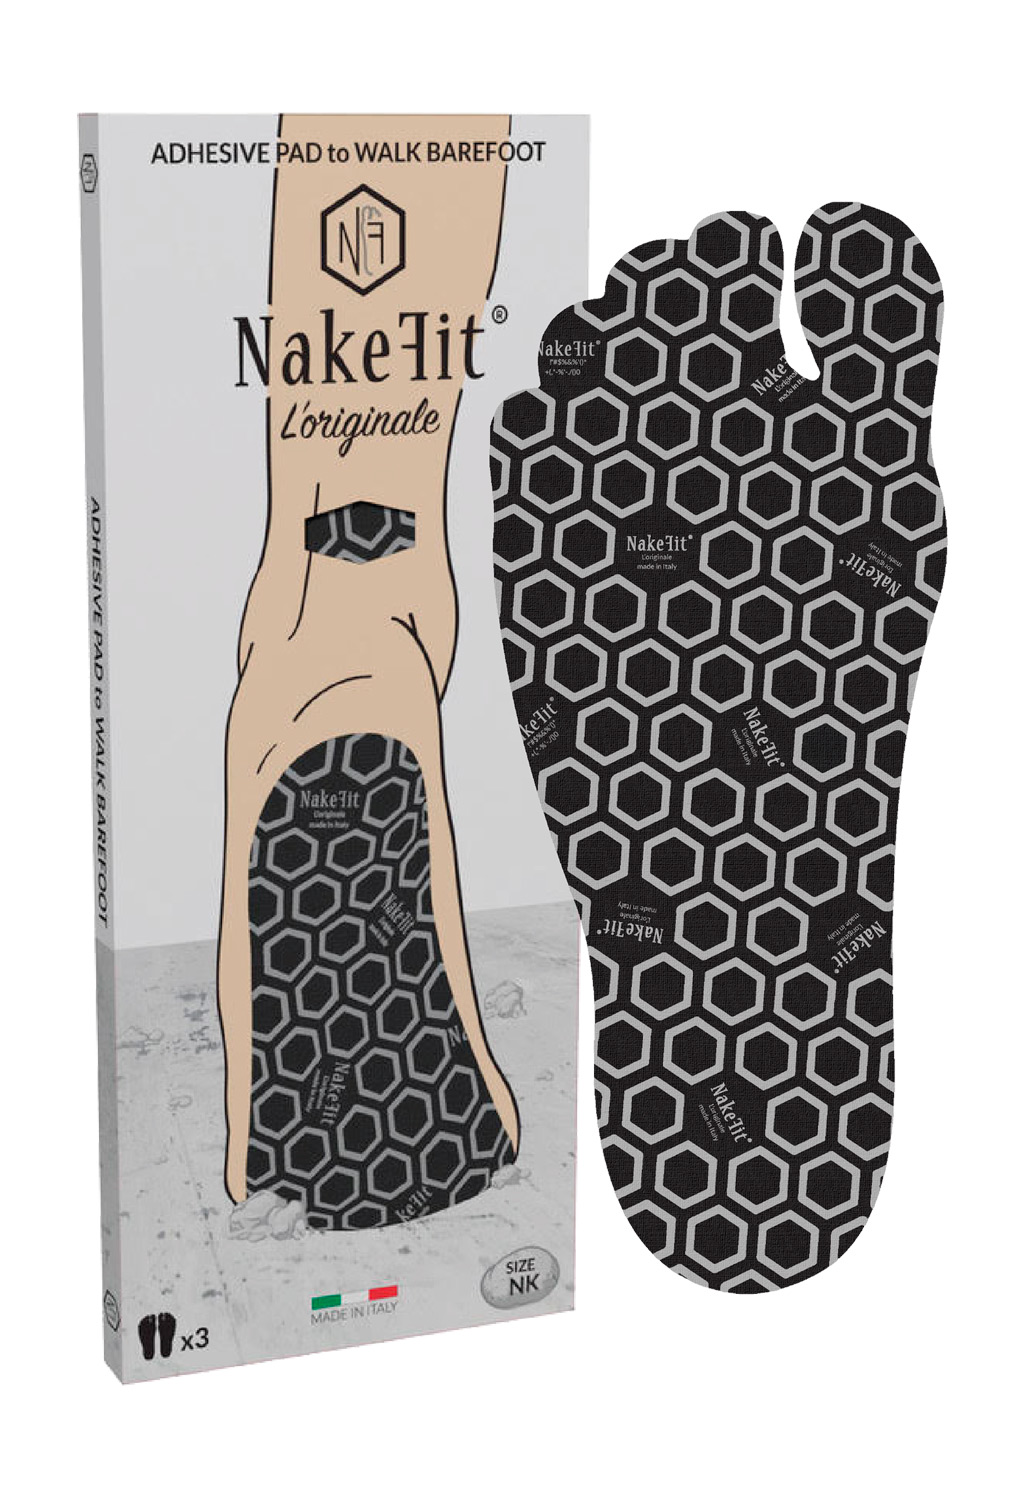 nakefit shoes